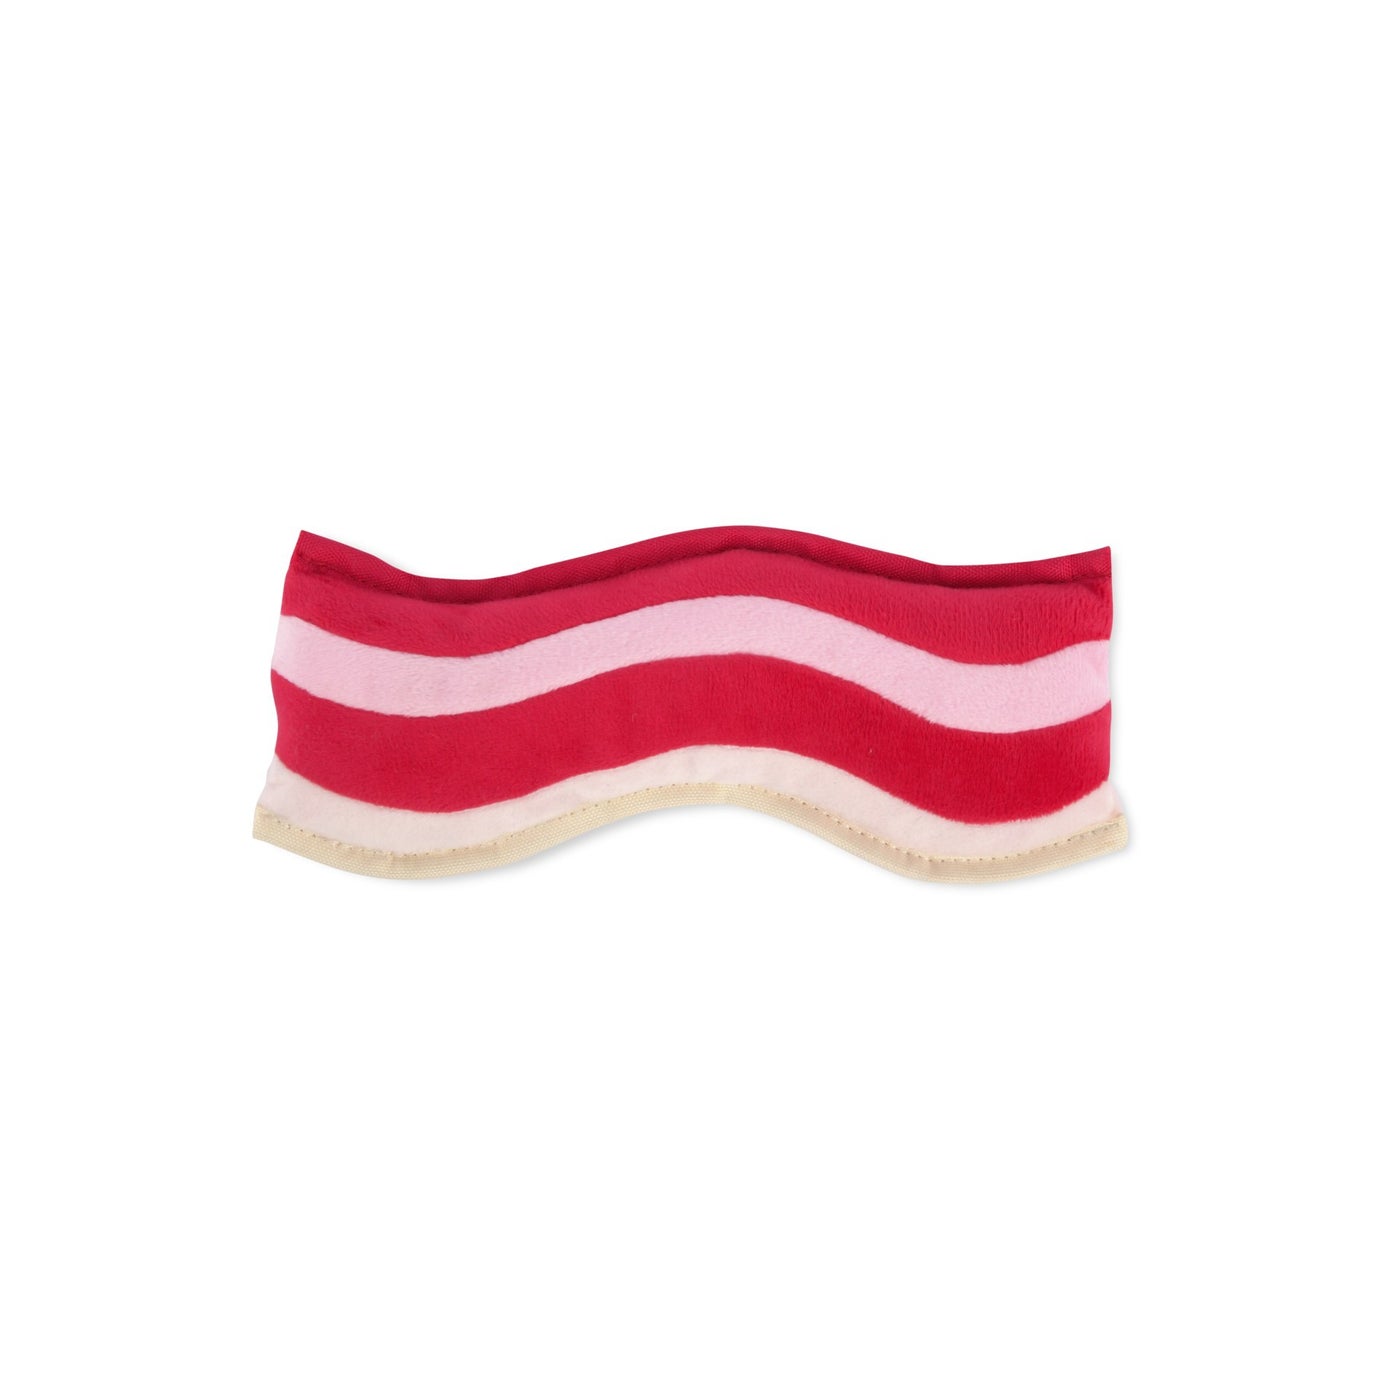 Bacon - Plush Toy